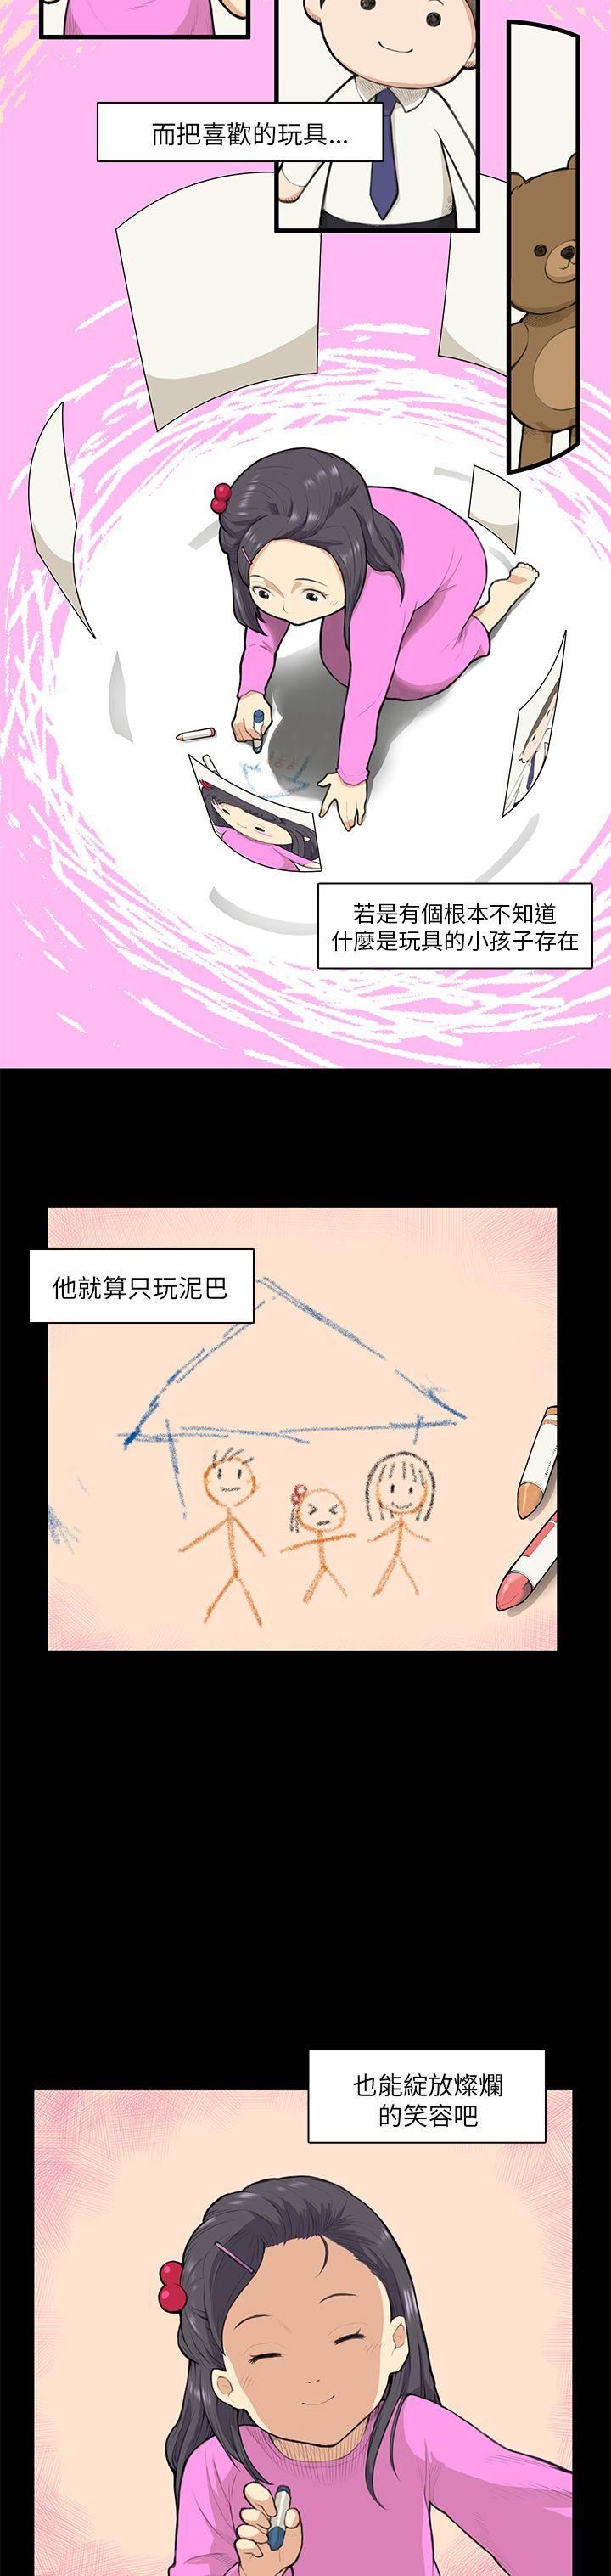 韩国污漫画 斯德哥爾摩癥候群 第12话 9